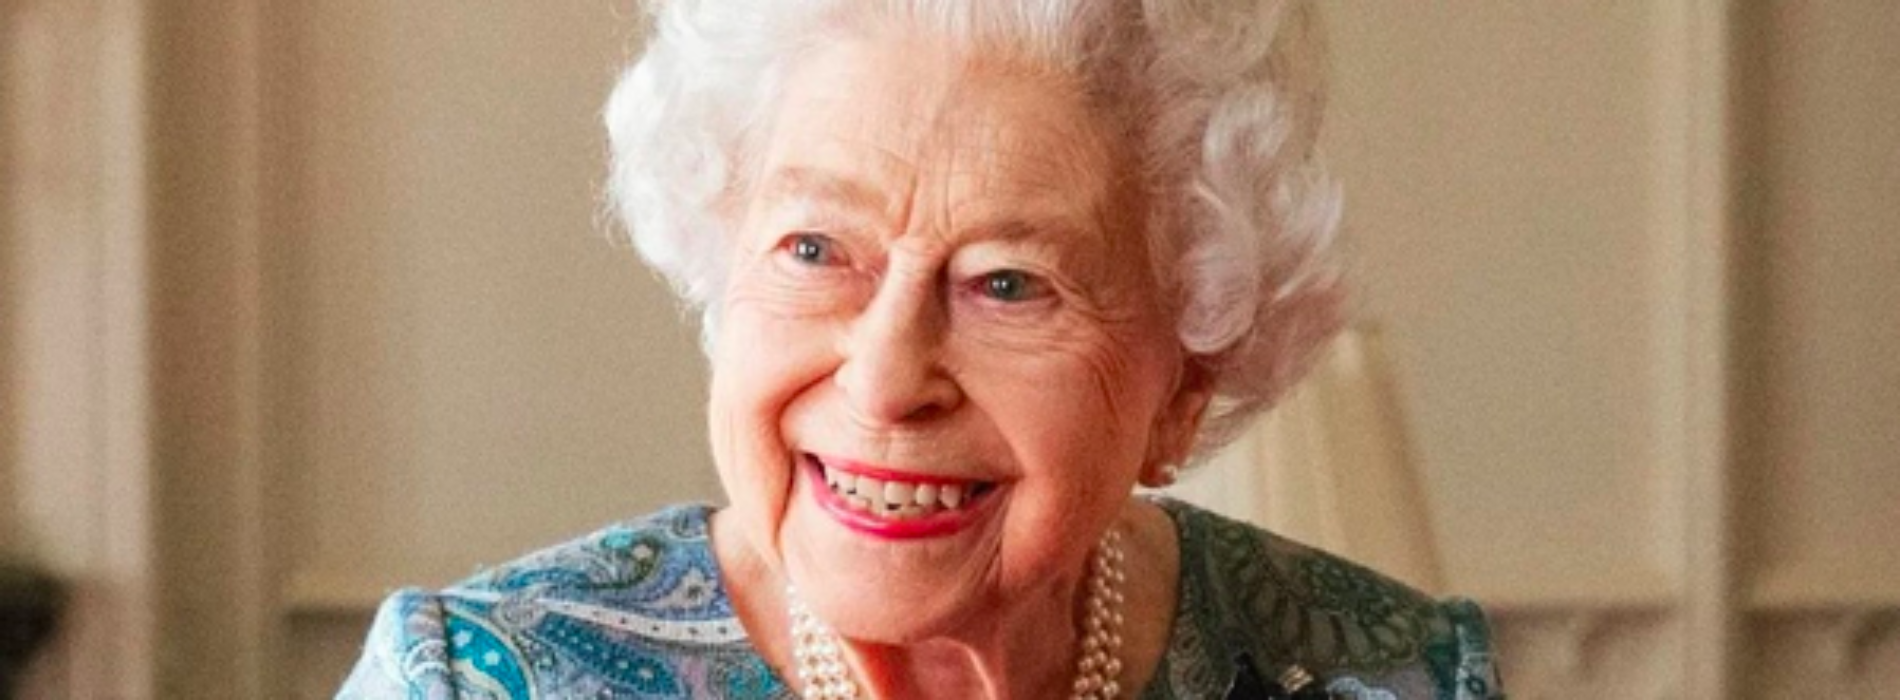 Preocupa estado de salud de la Reina Isabel II